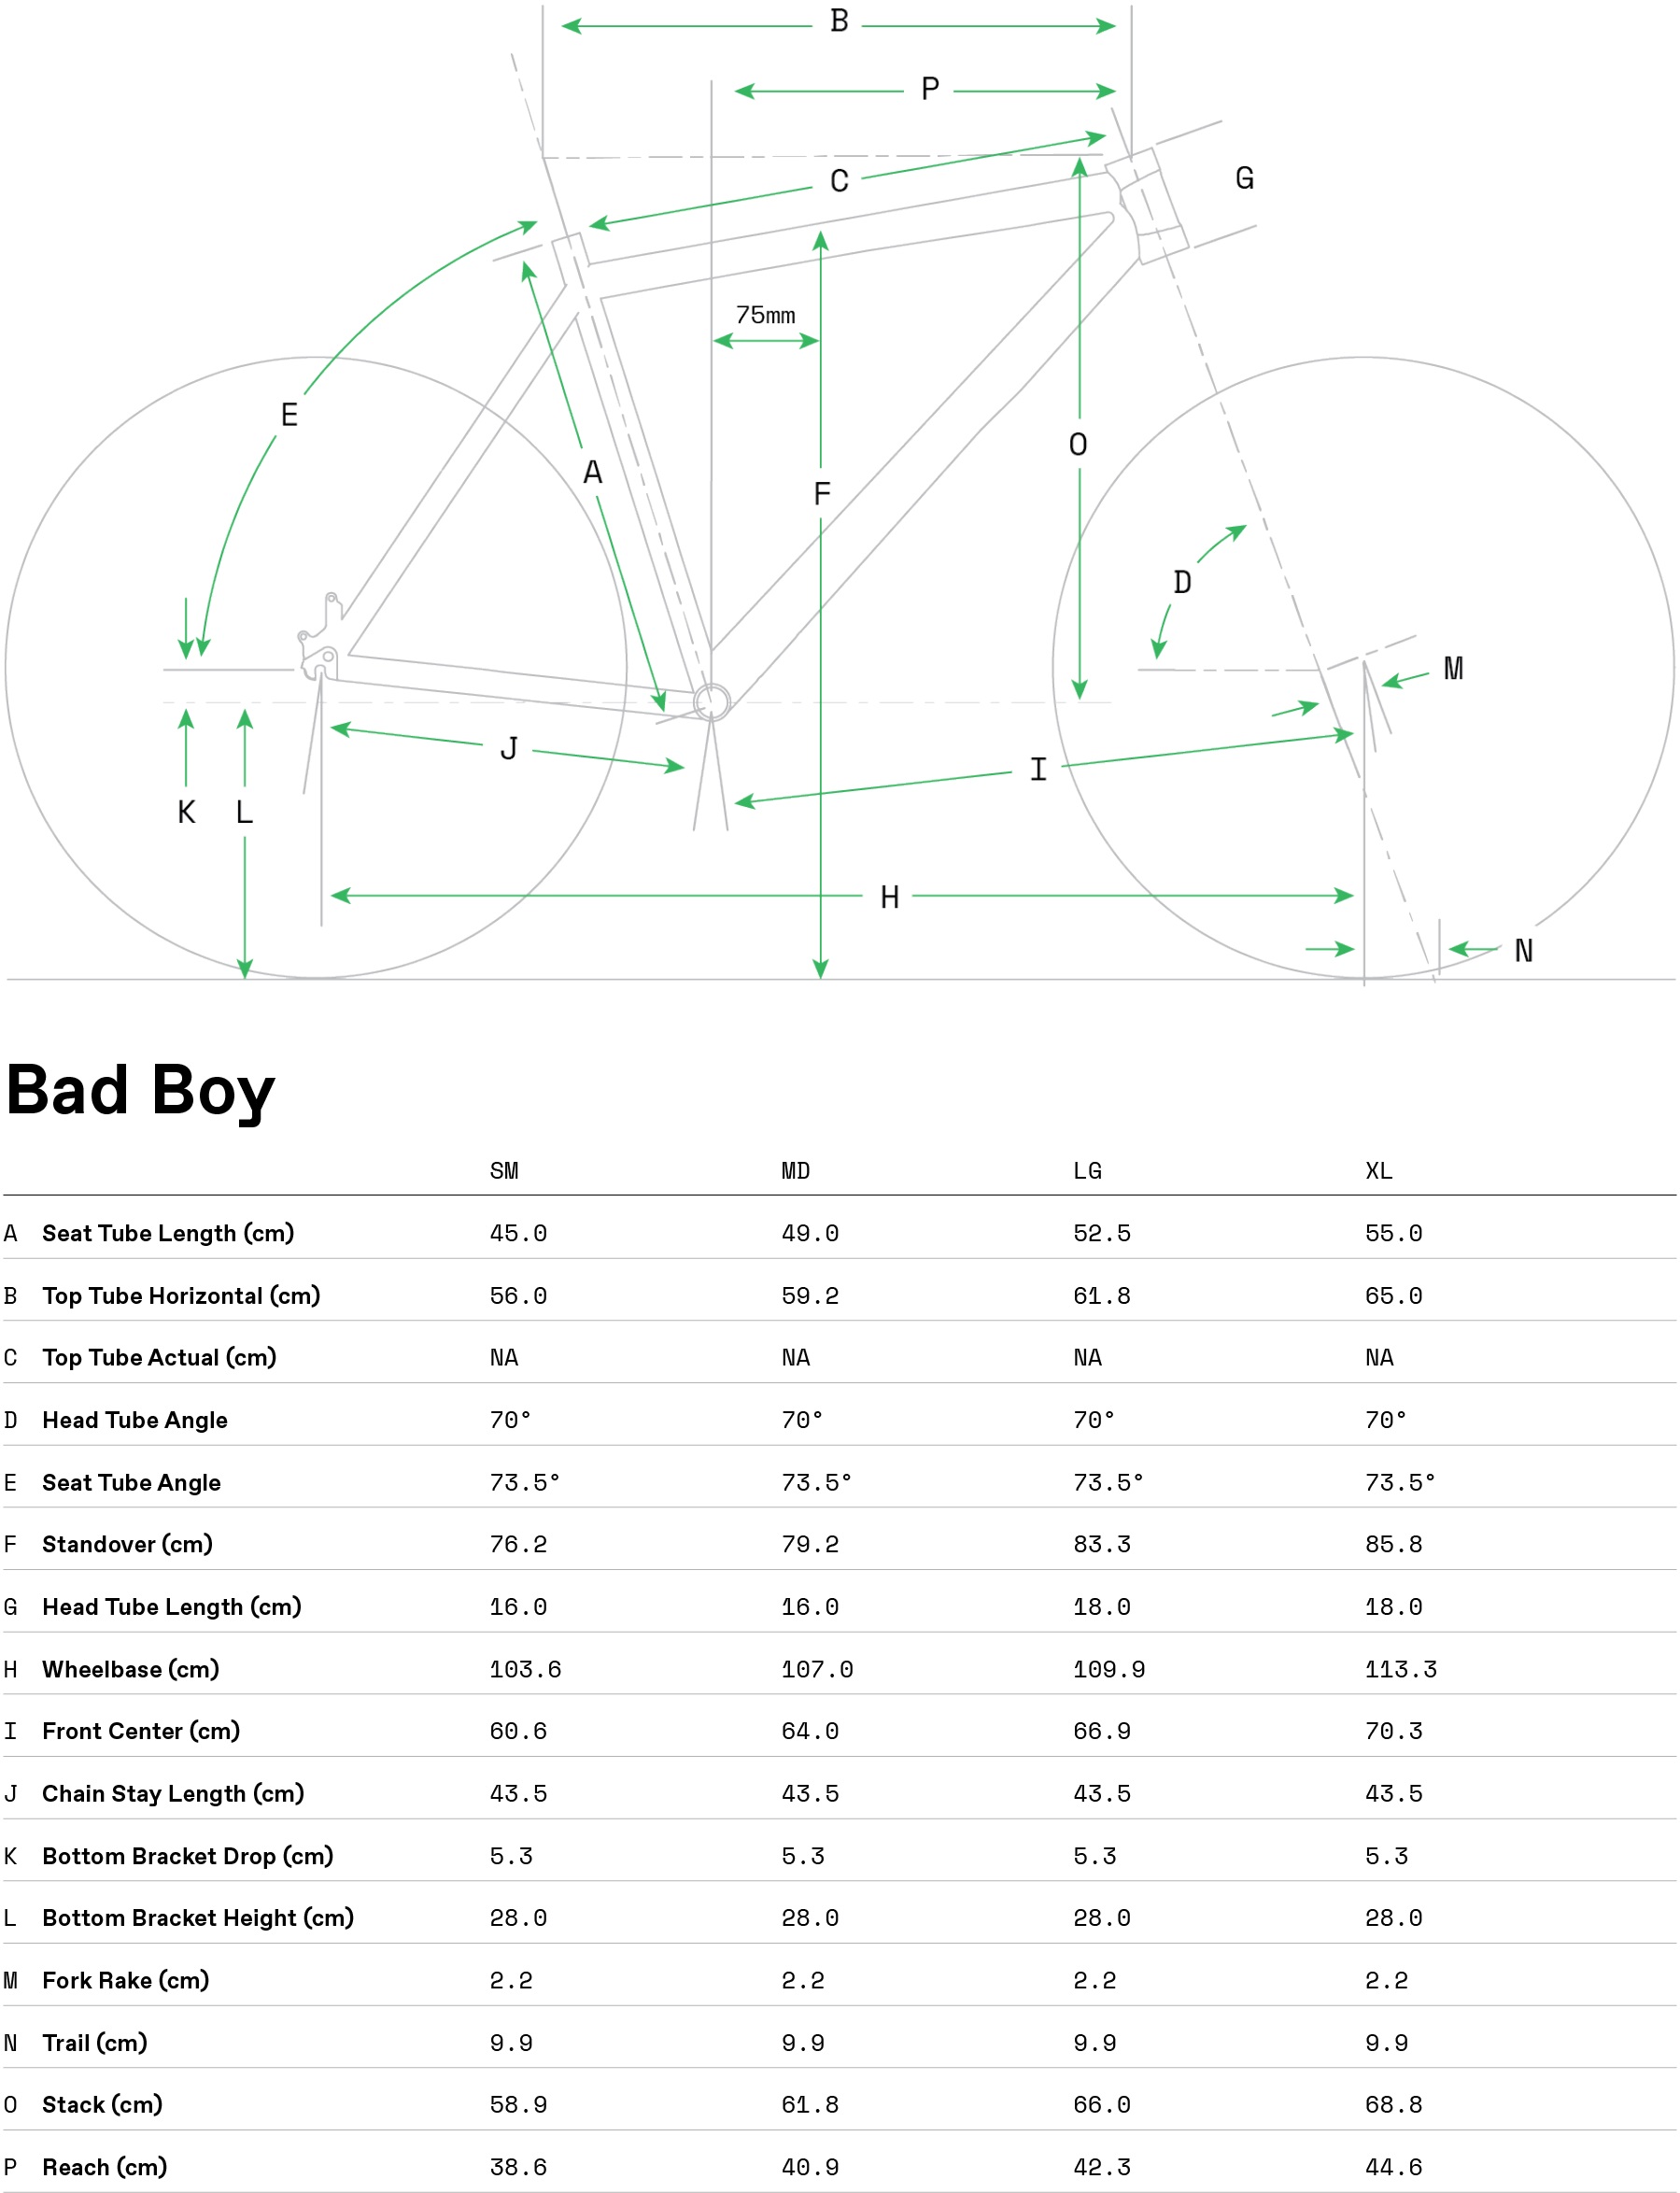 Geometria roweru Cannondale Bad Boy 1